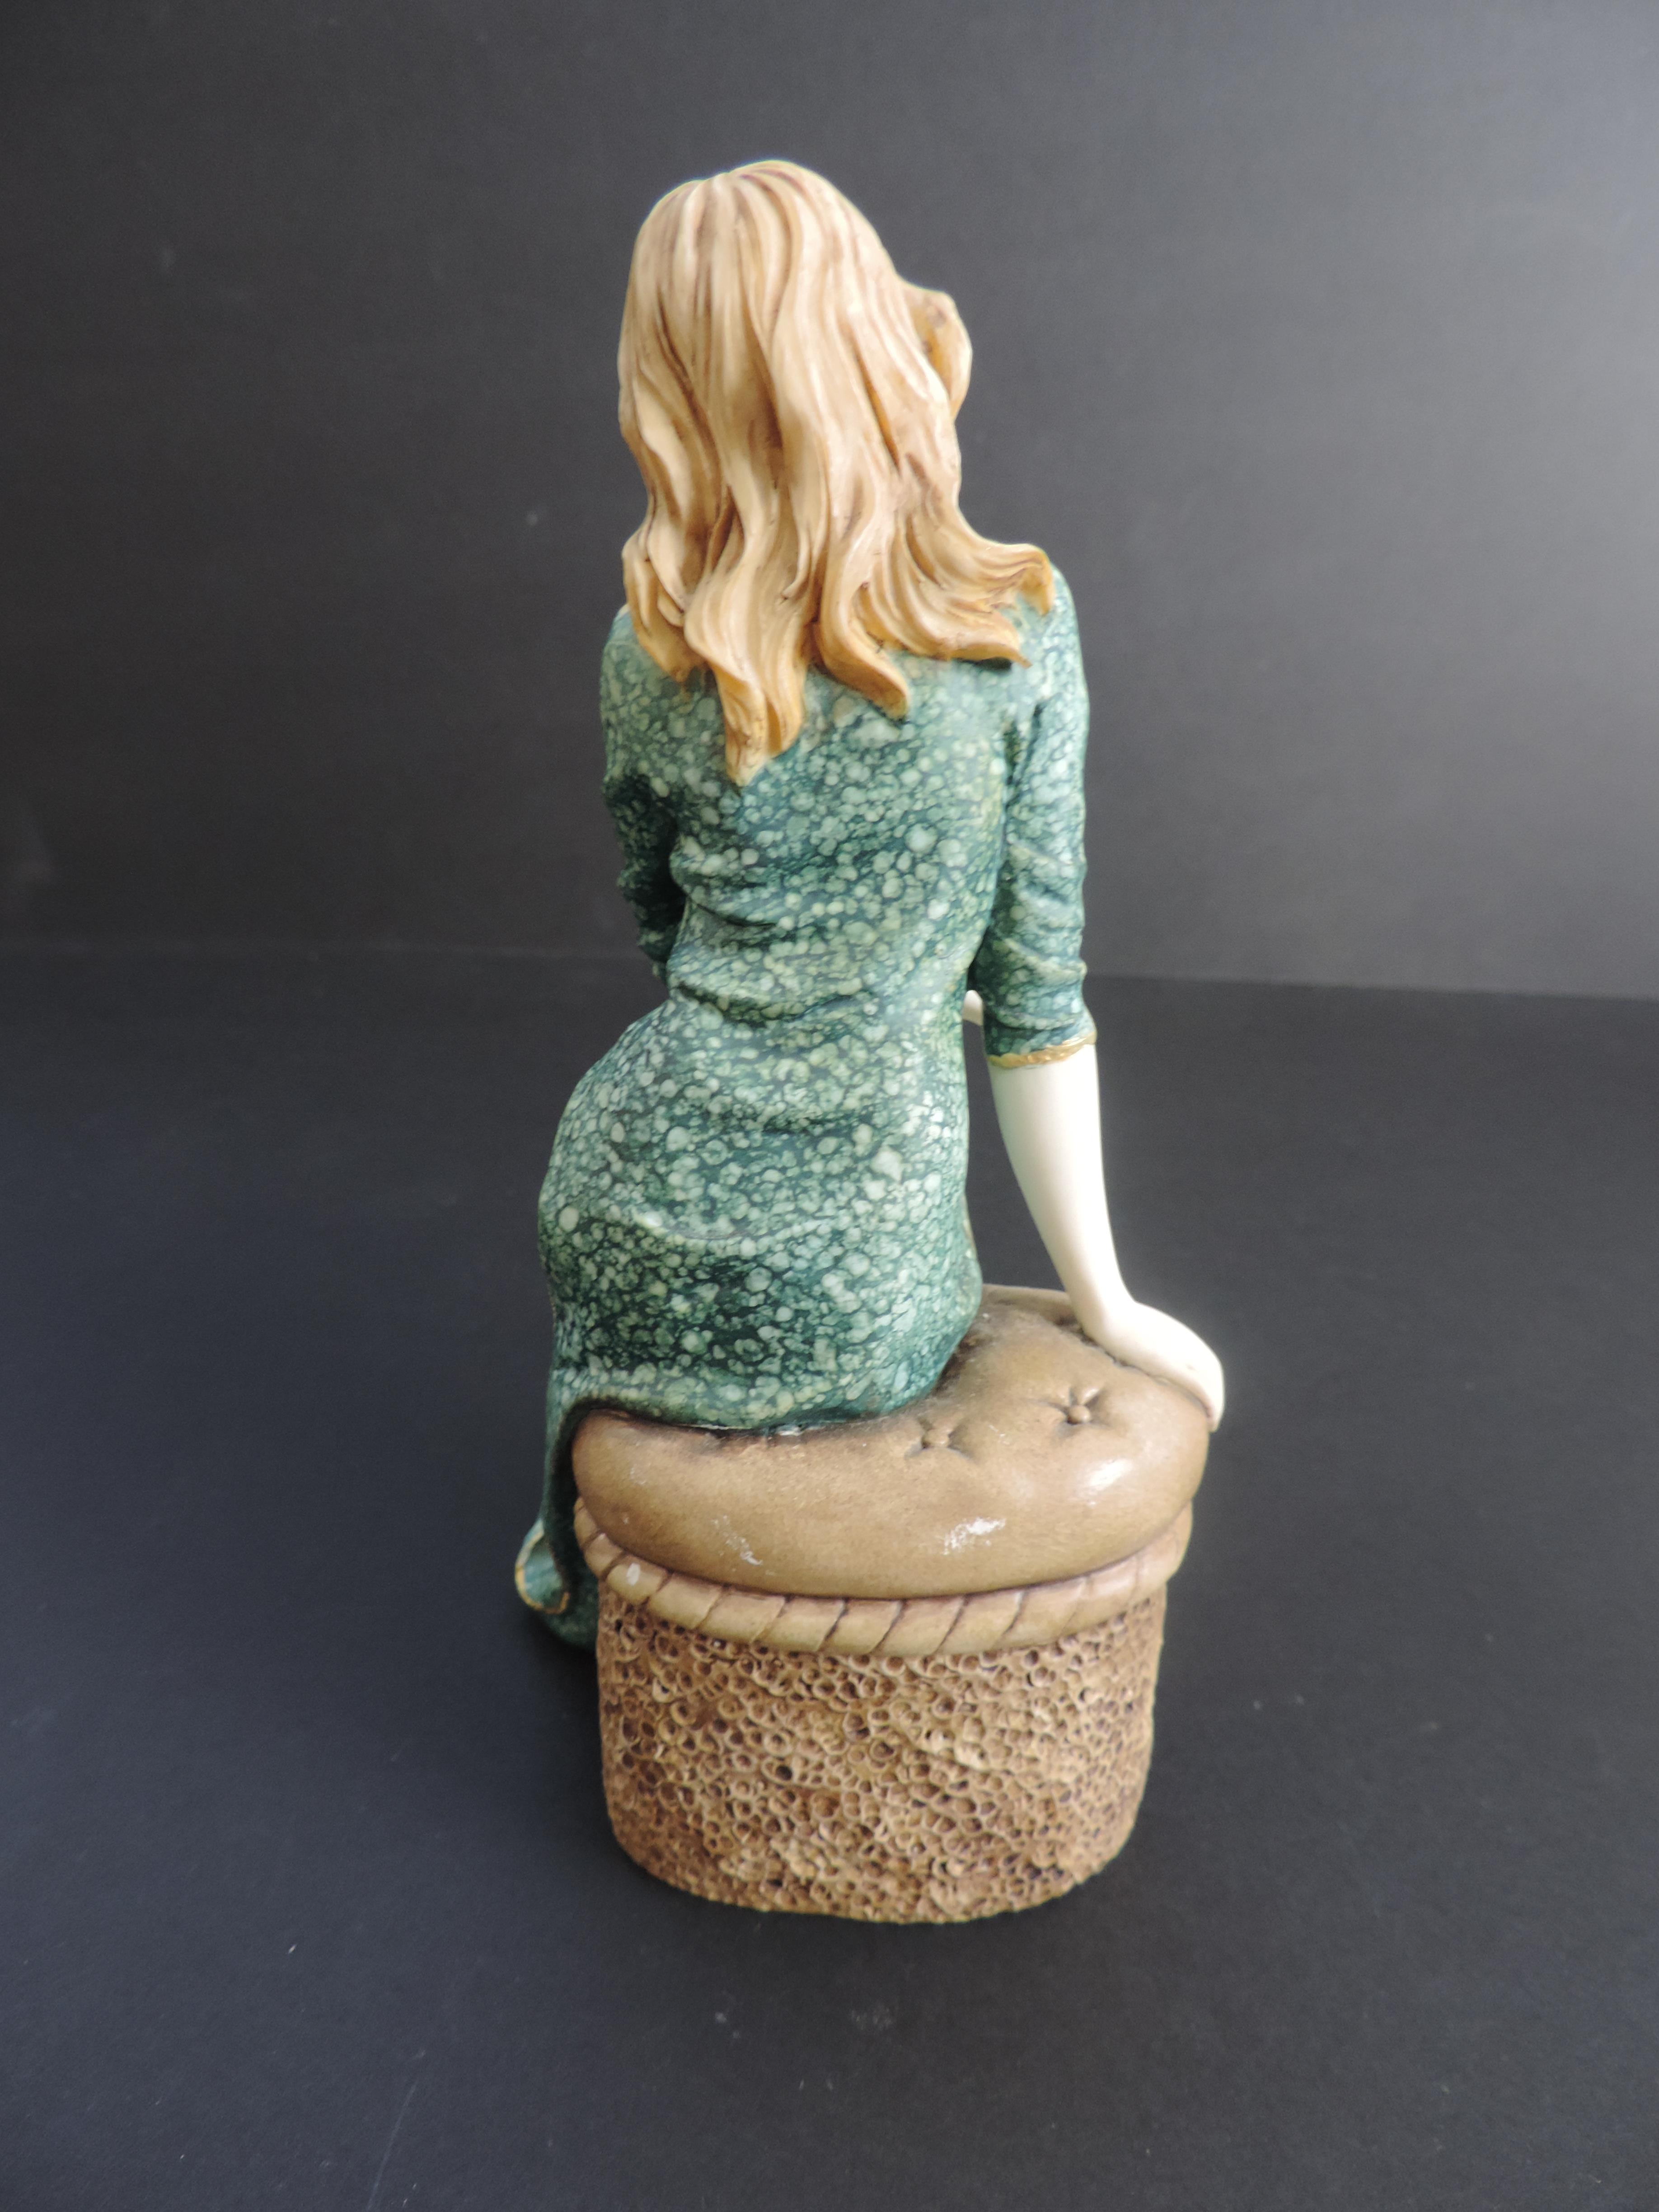 Regal Porcelain Figurine 'Joanne' - Image 3 of 4